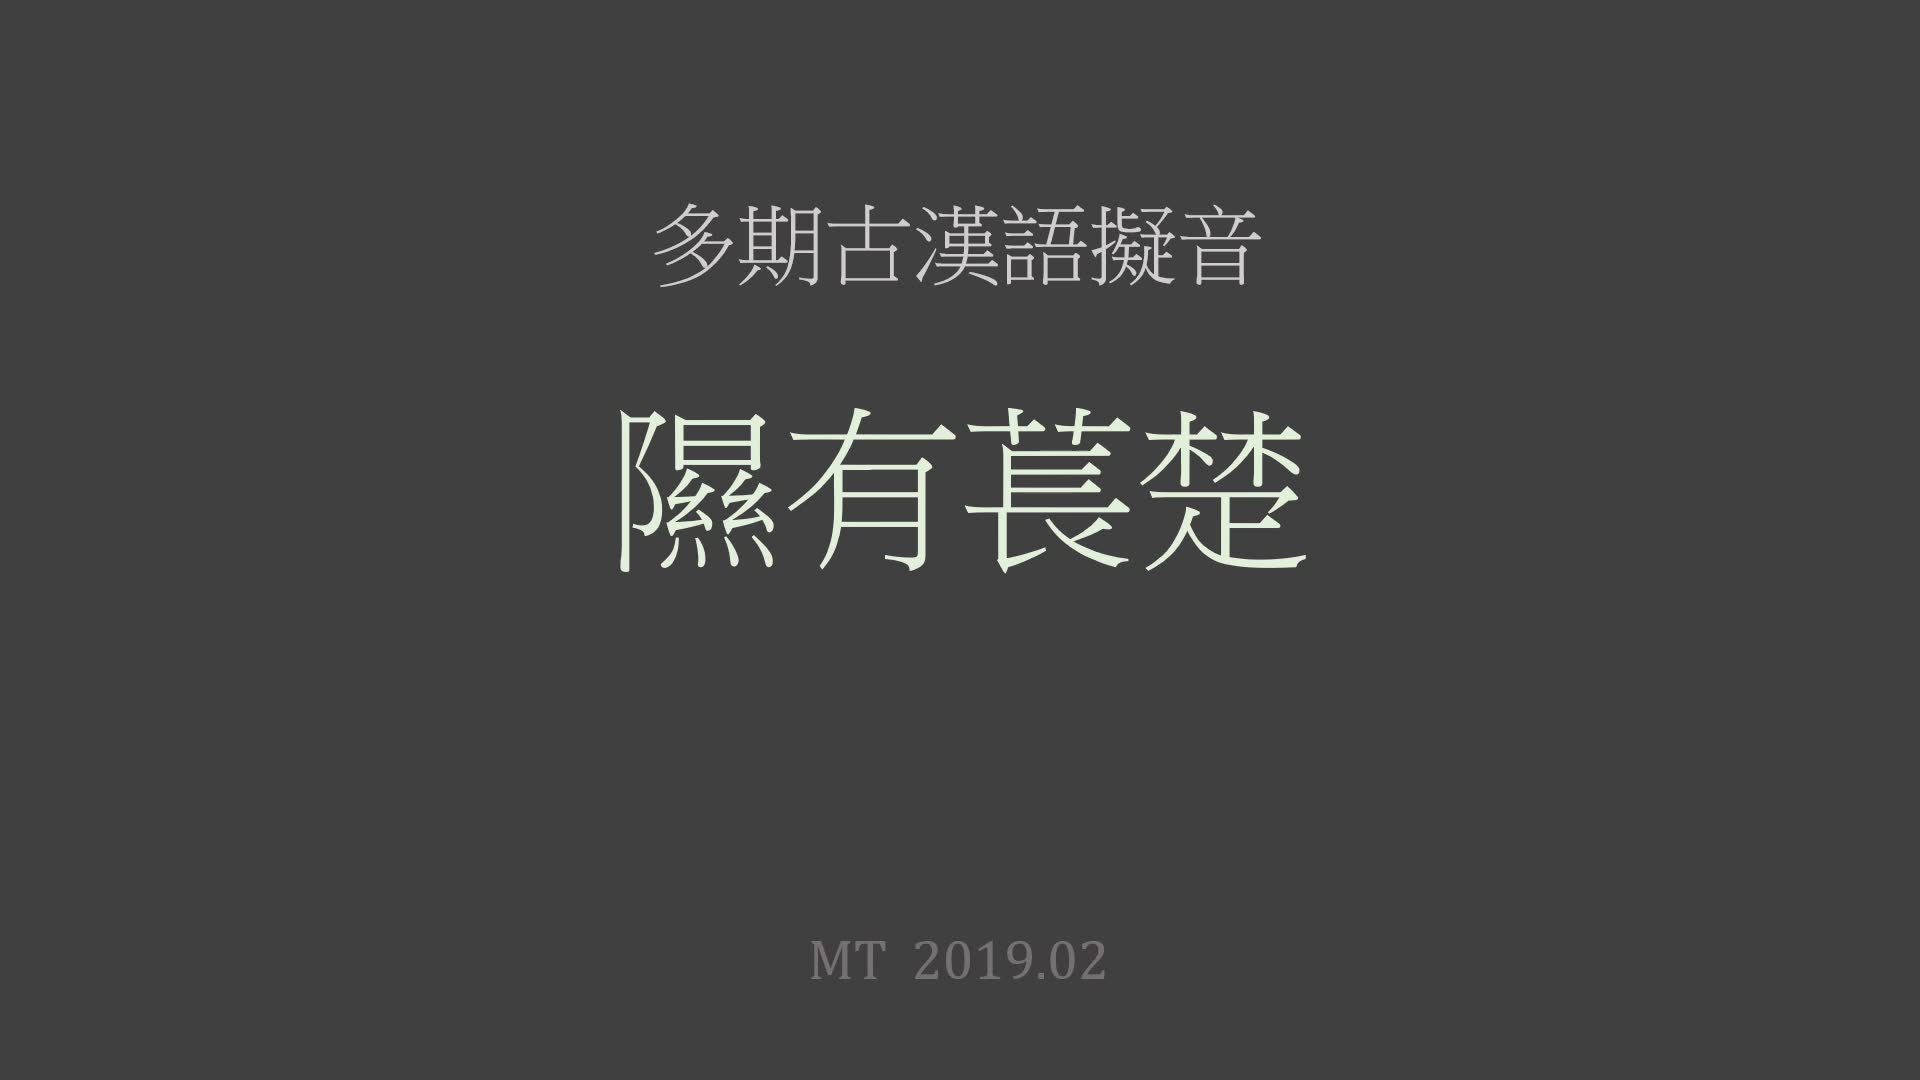 古汉语听起来是怎样的 2019 版 - 诗经 隰有苌楚 古汉语拟音